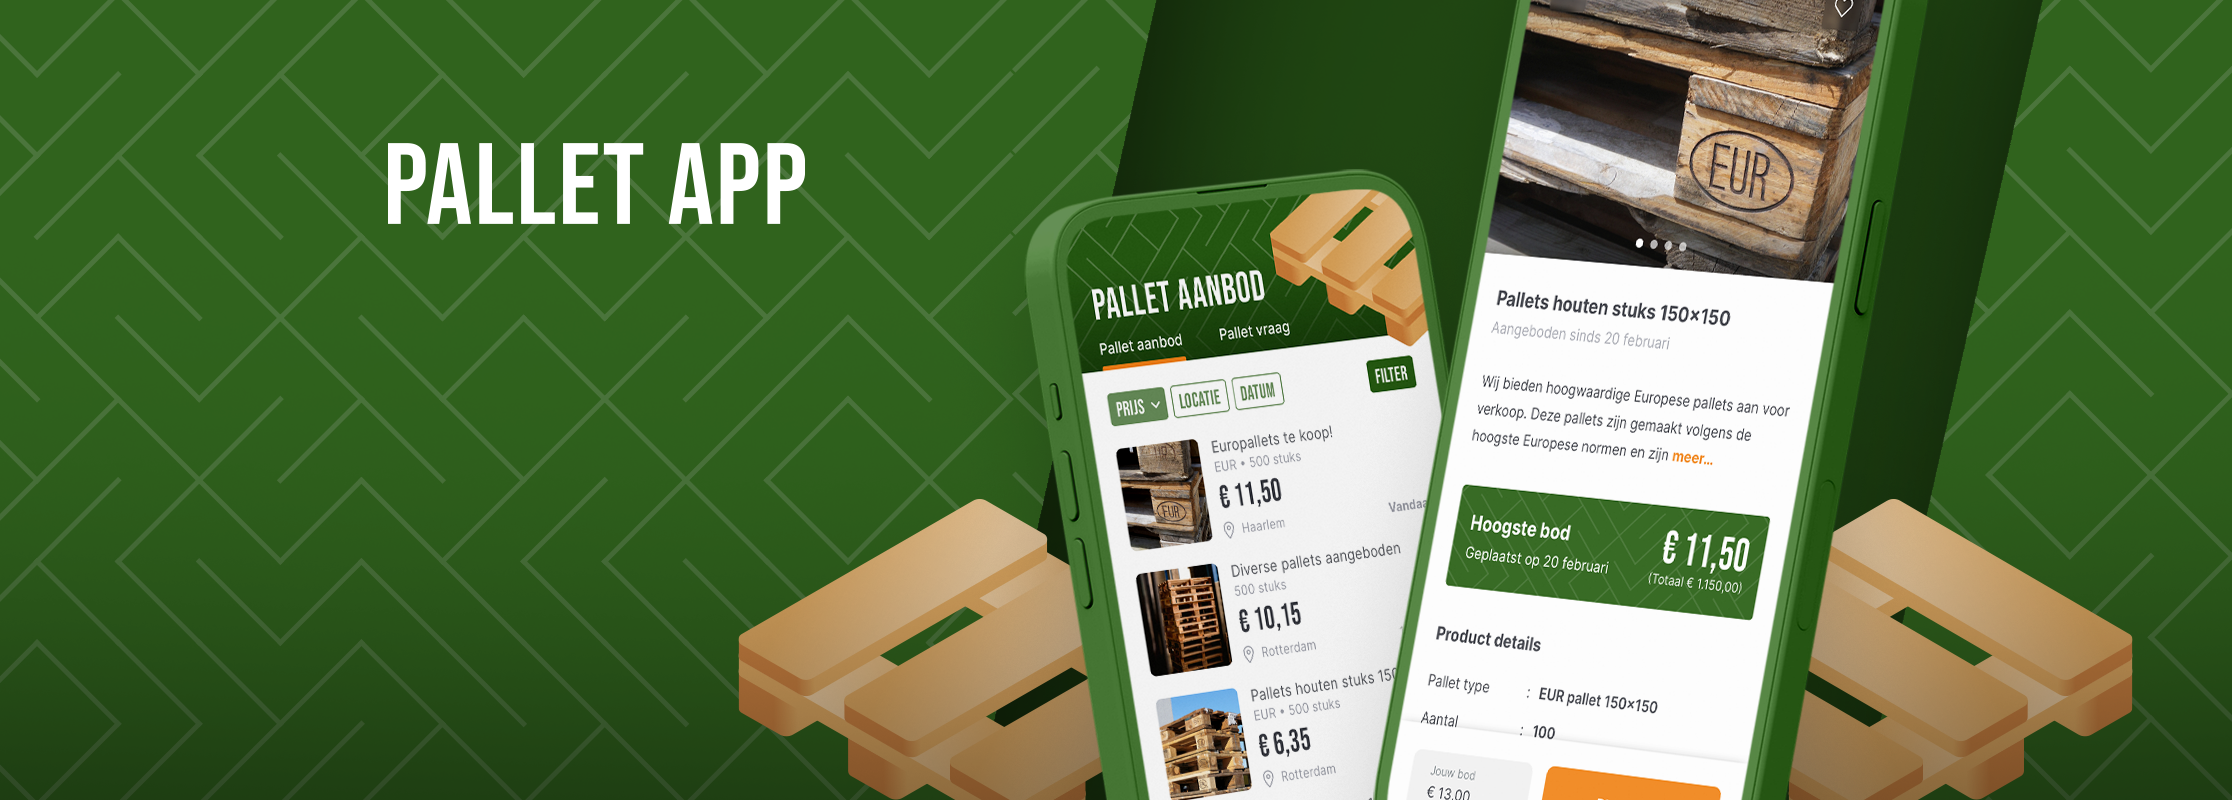 Pallet app: eenvoudig pallets kopen en verkopen